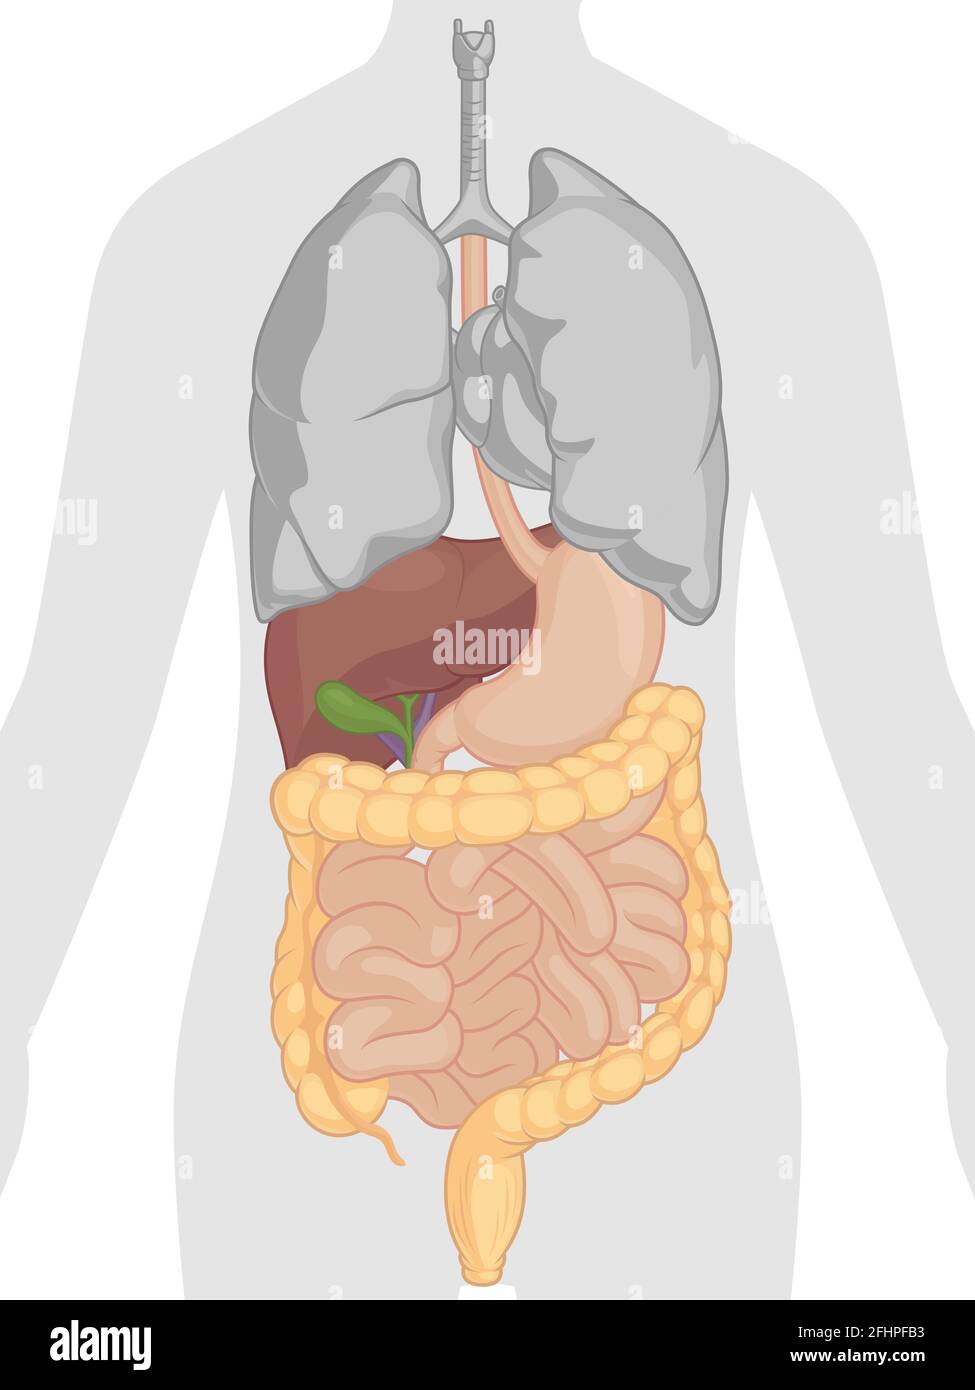 Sistema Digestivo Humano Órganos Internos Anatomía Dibujo Vectorial Cartoon Ilustración del Vector